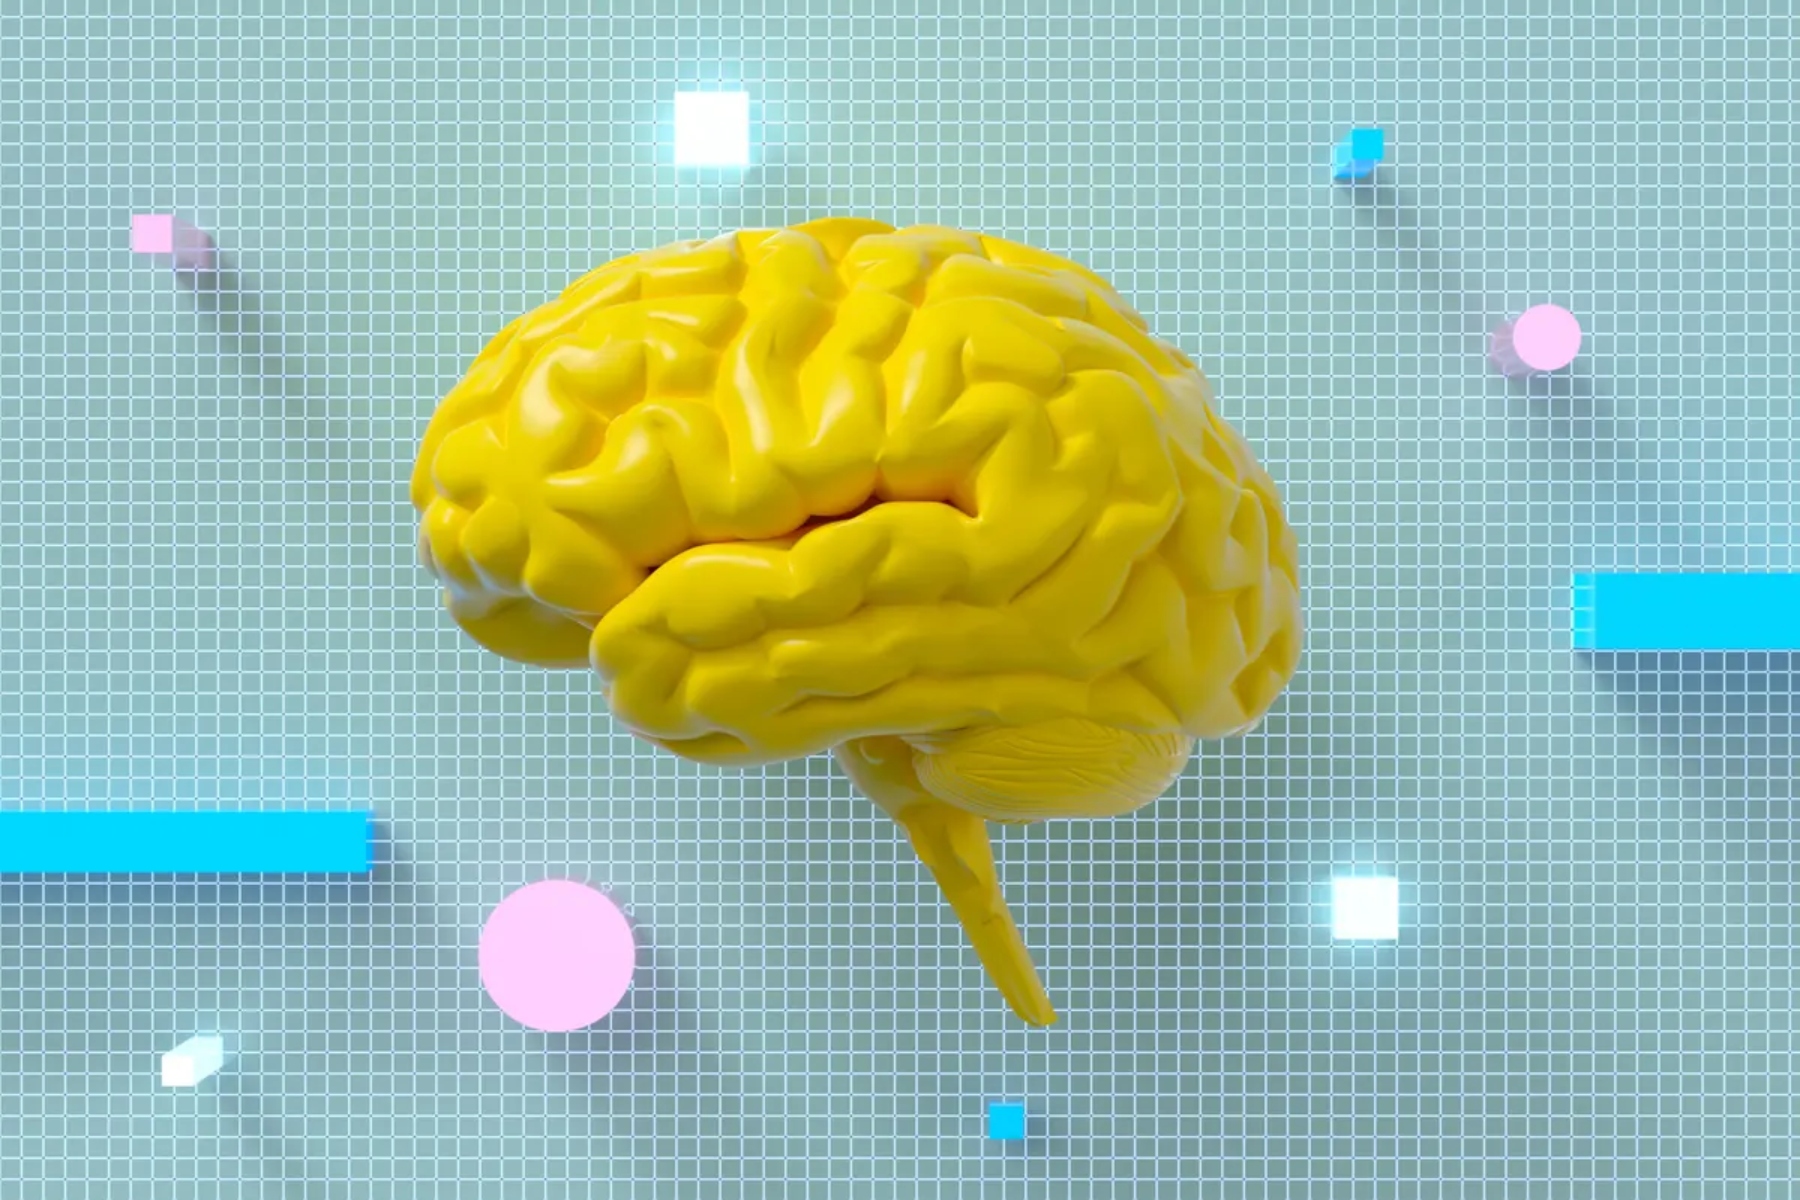 Νευροεπιστήμονες διερευνούν πώς παίρνει αποφάσεις ο εγκέφαλος